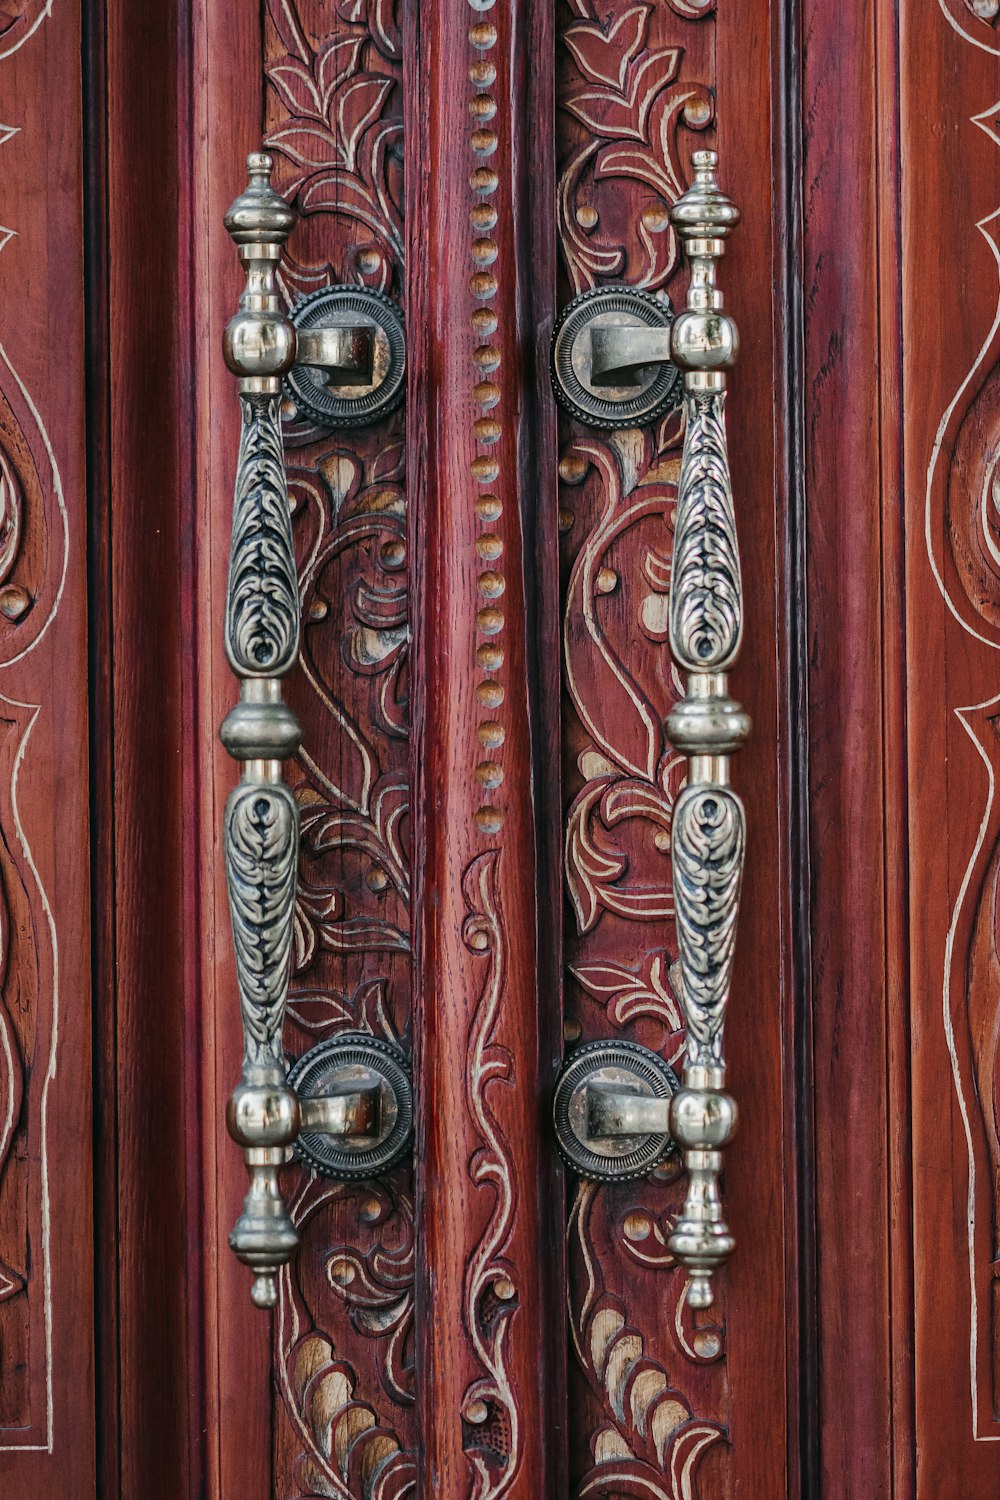 shallow focus photo of gray door handles